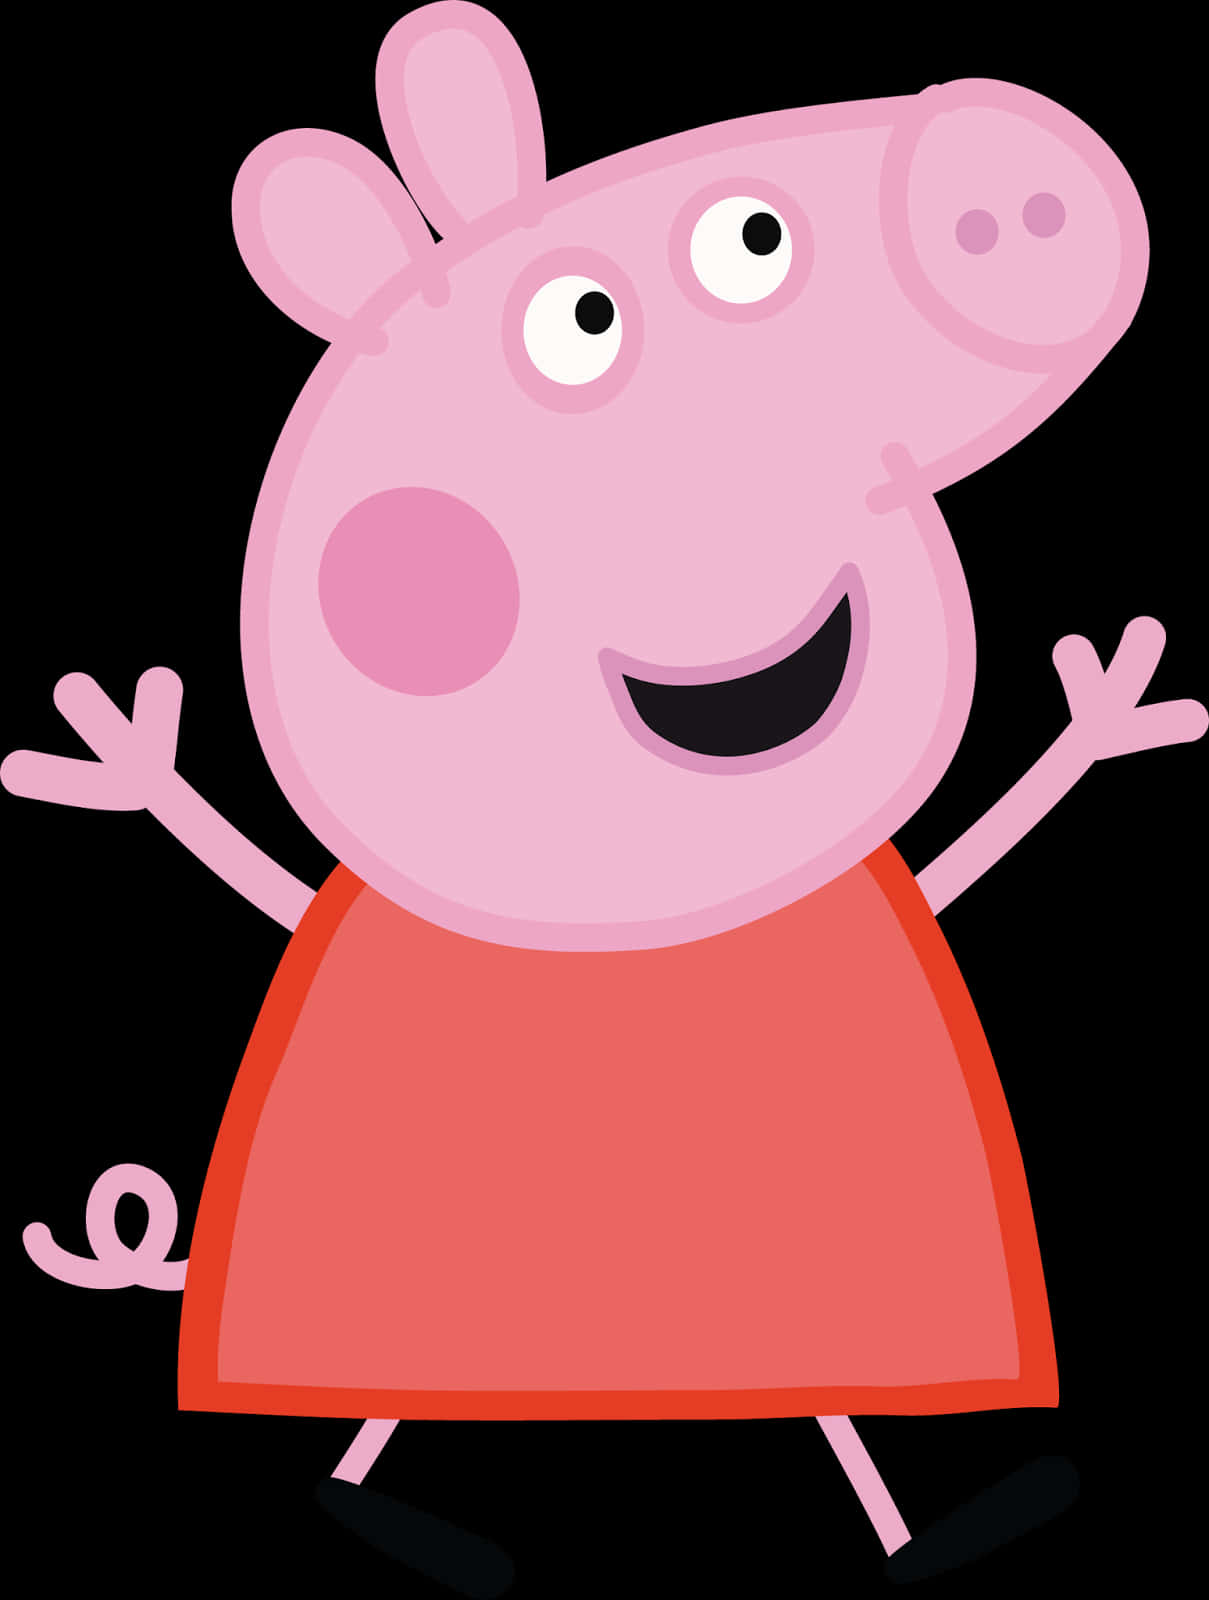 A Cartoon Of A Pig